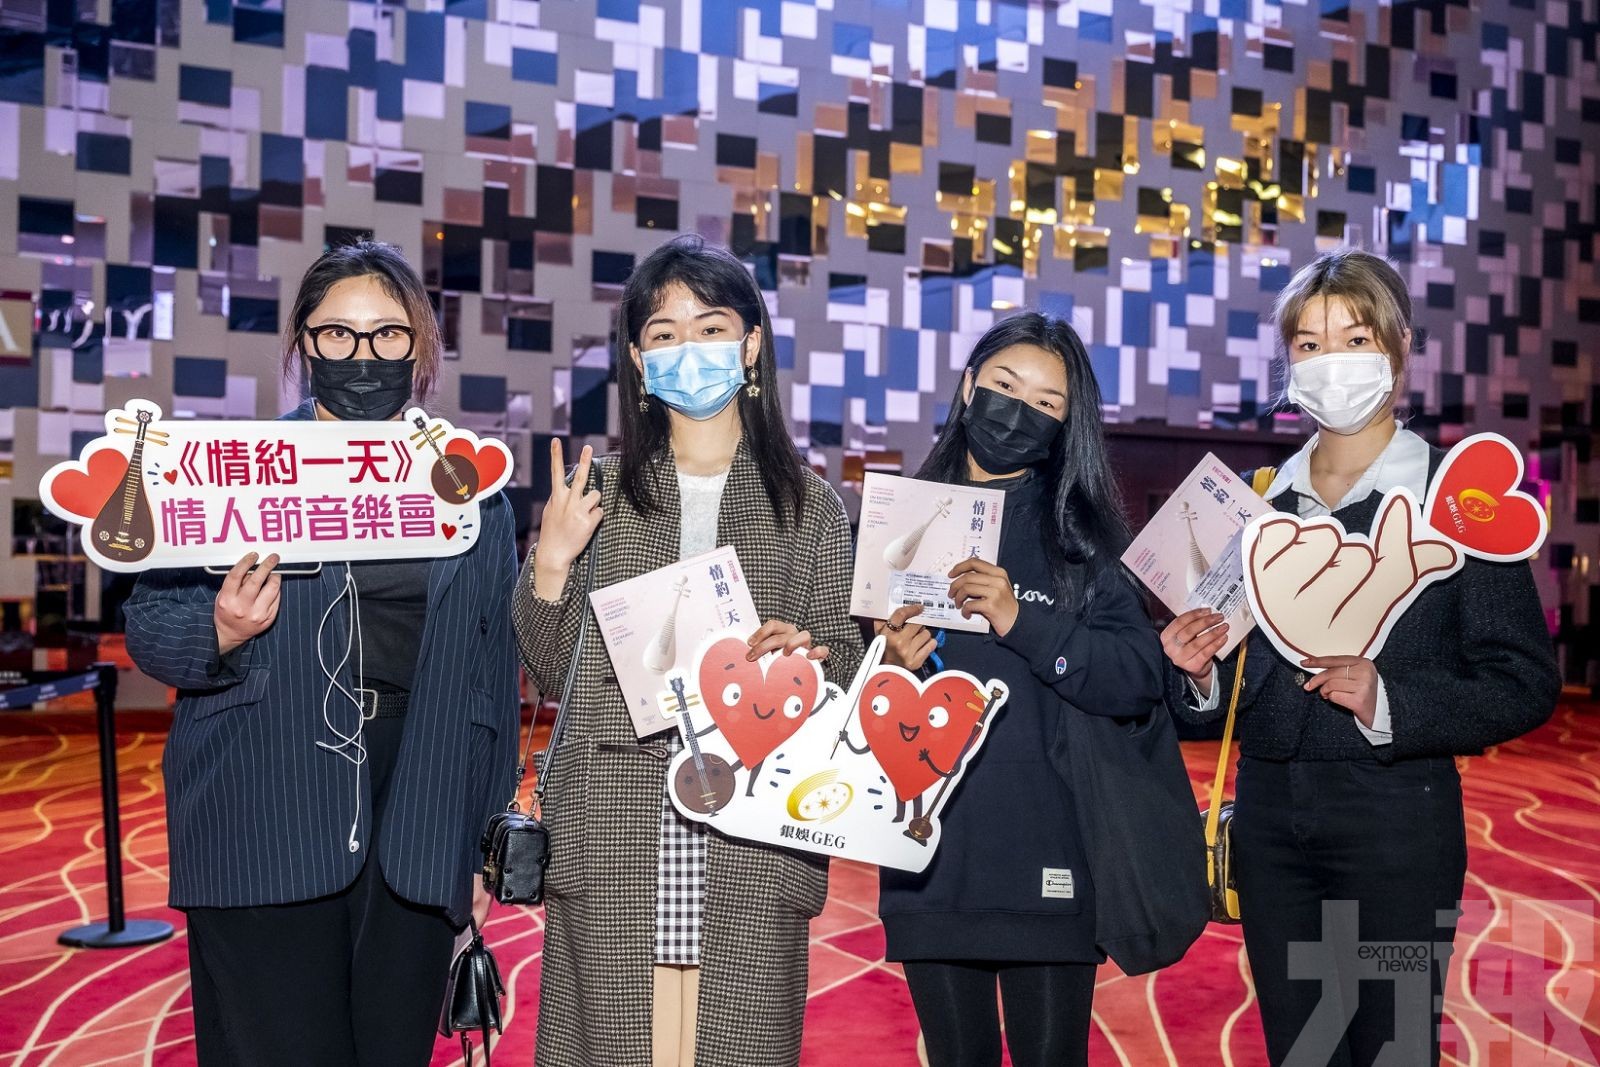 銀娛支持藝術文化發展 向社區及團隊成員推廣中樂欣賞